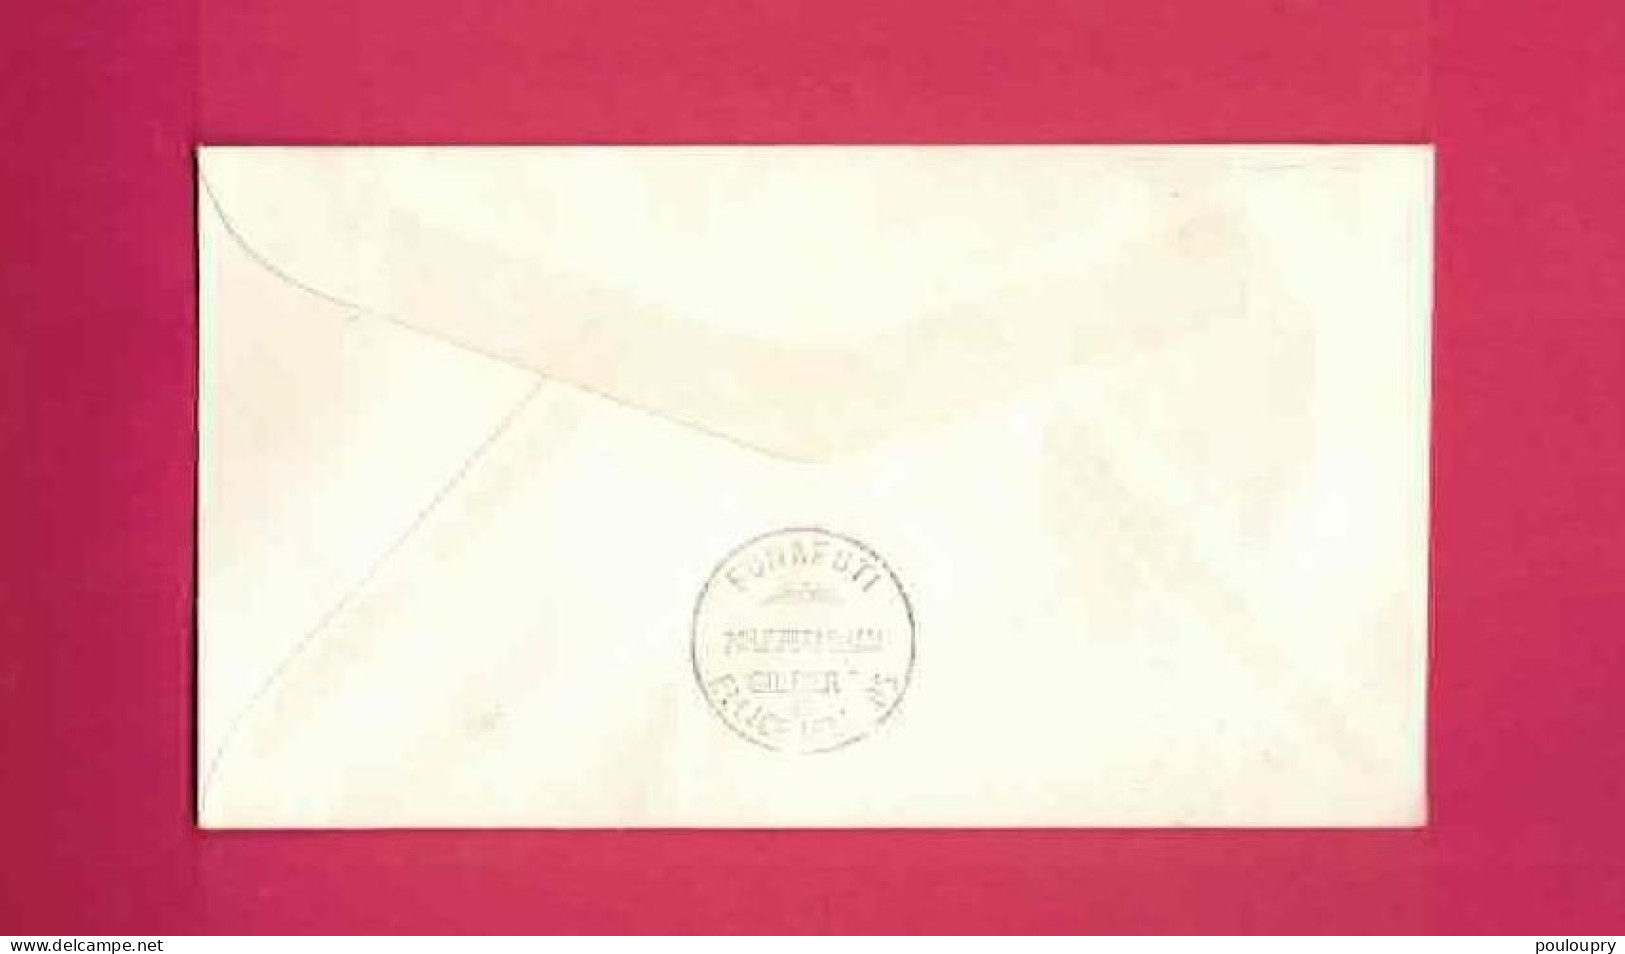 Lettre De 1967 Pour Gilbert Et Ellice - YT N° 158B, 163 Et 164 - Vol Expérimental Samoa-Wallis Et Futuna, Gilbert - Covers & Documents